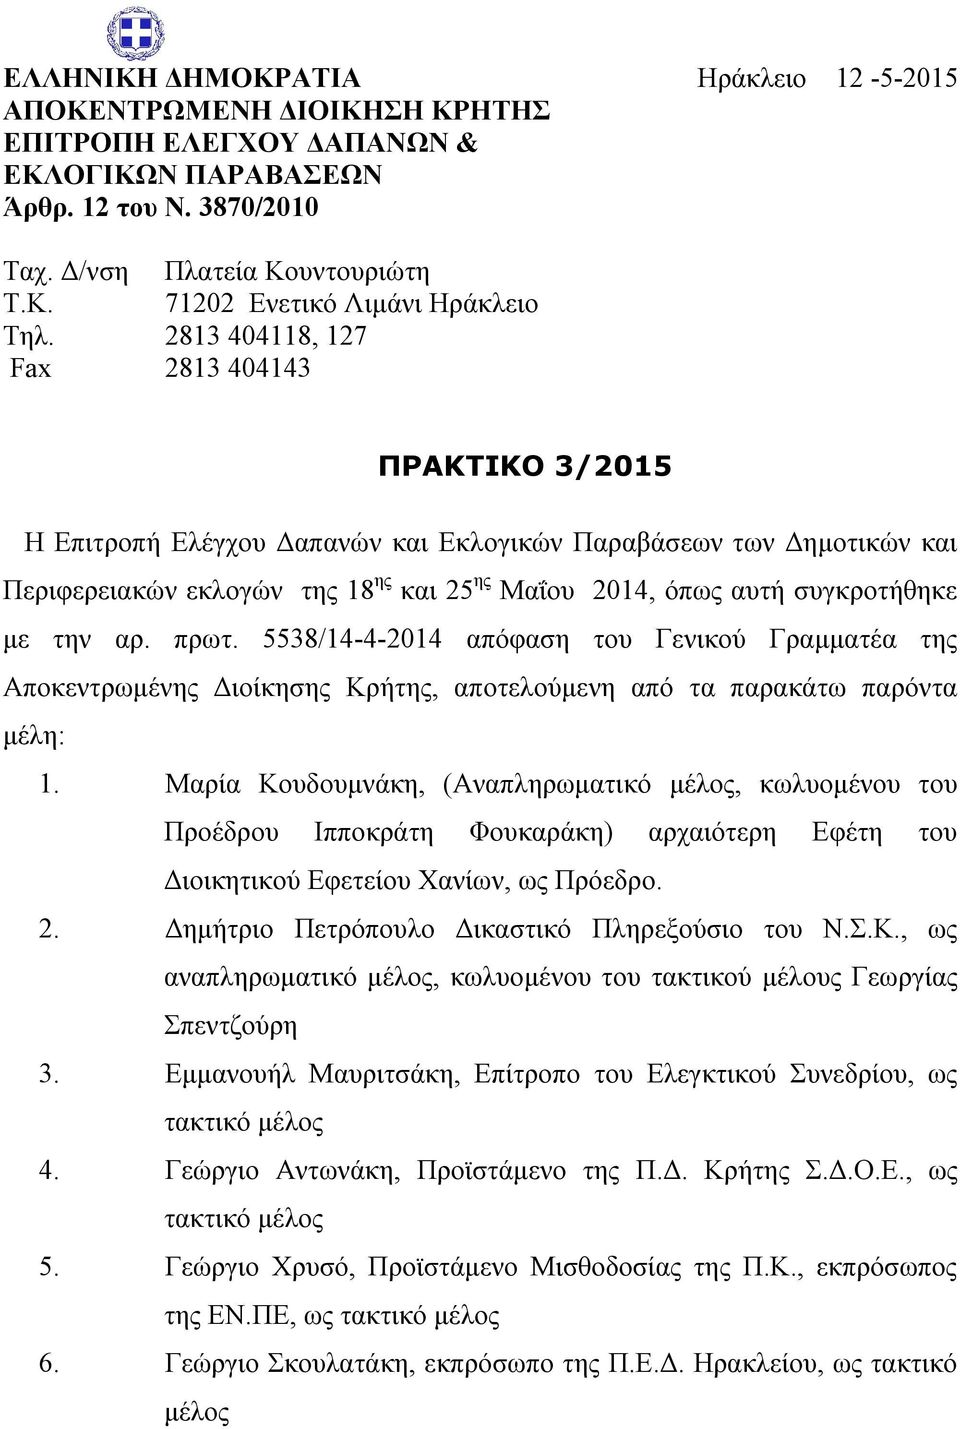 την αρ. πρωτ. 5538/14-4-2014 απόφαση του Γενικού Γραμματέα της Αποκεντρωμένης Διοίκησης Κρήτης, αποτελούμενη από τα παρακάτω παρόντα μέλη: 1.